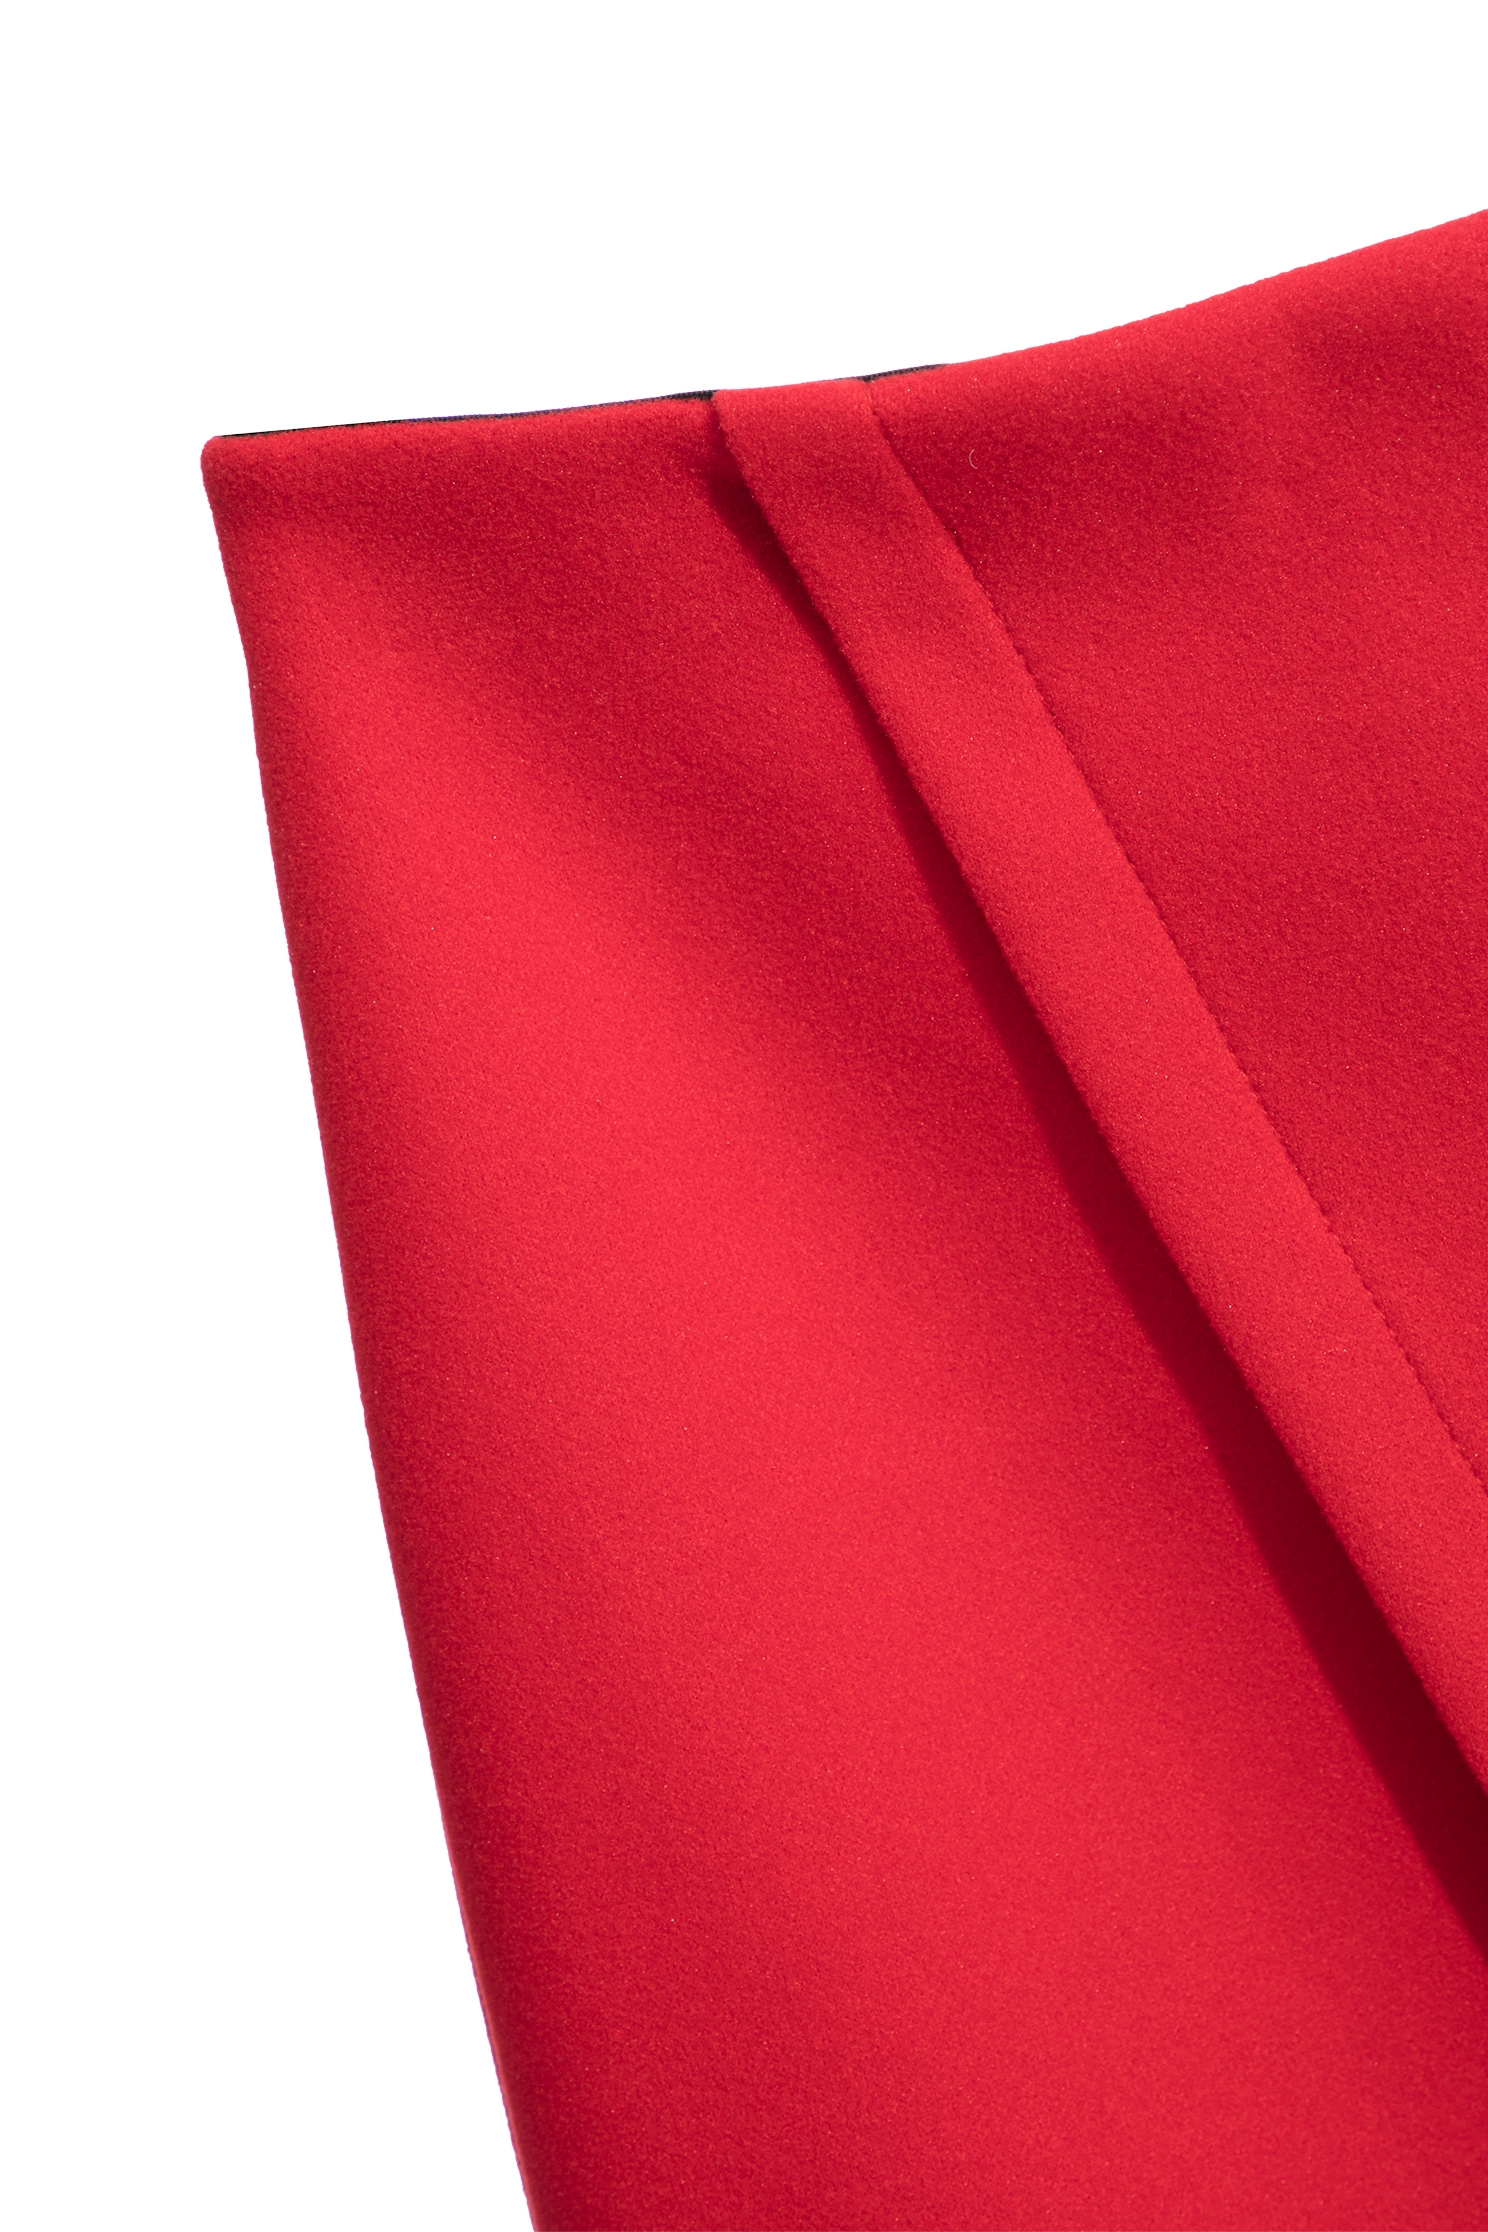 魅惑紅變化交叉彈性裙魅惑紅變化交叉彈性裙,時髦選品專區,秋冬穿搭,窄裙,針織,開運紅